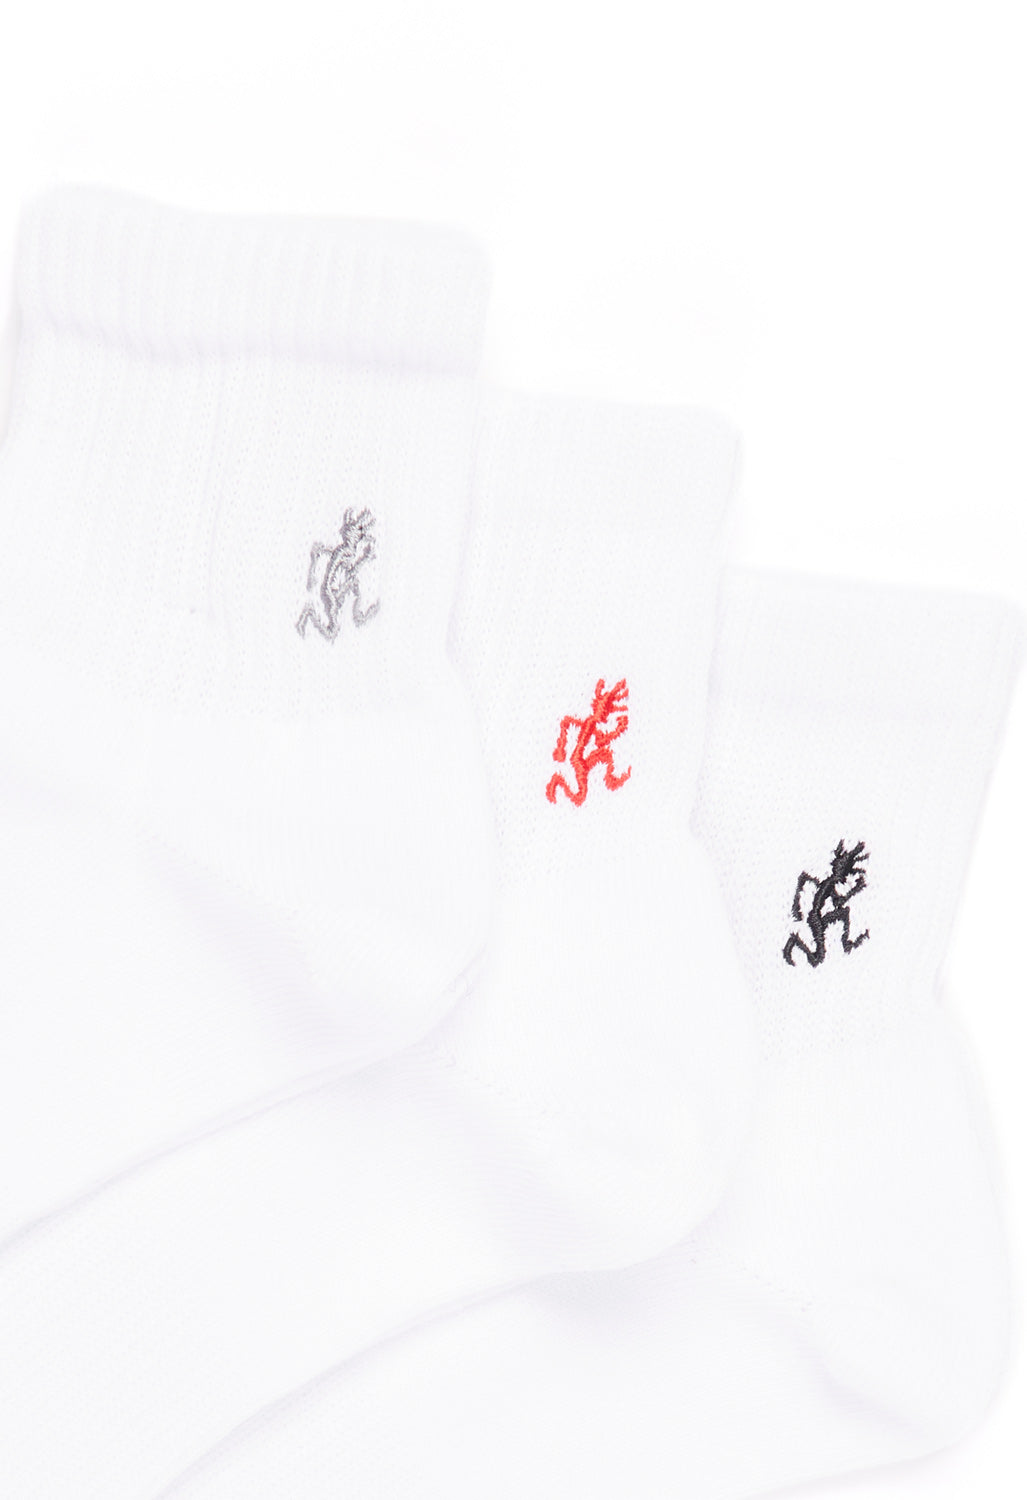 Gramicci Men's Basic Short Socks 3 Pack - White